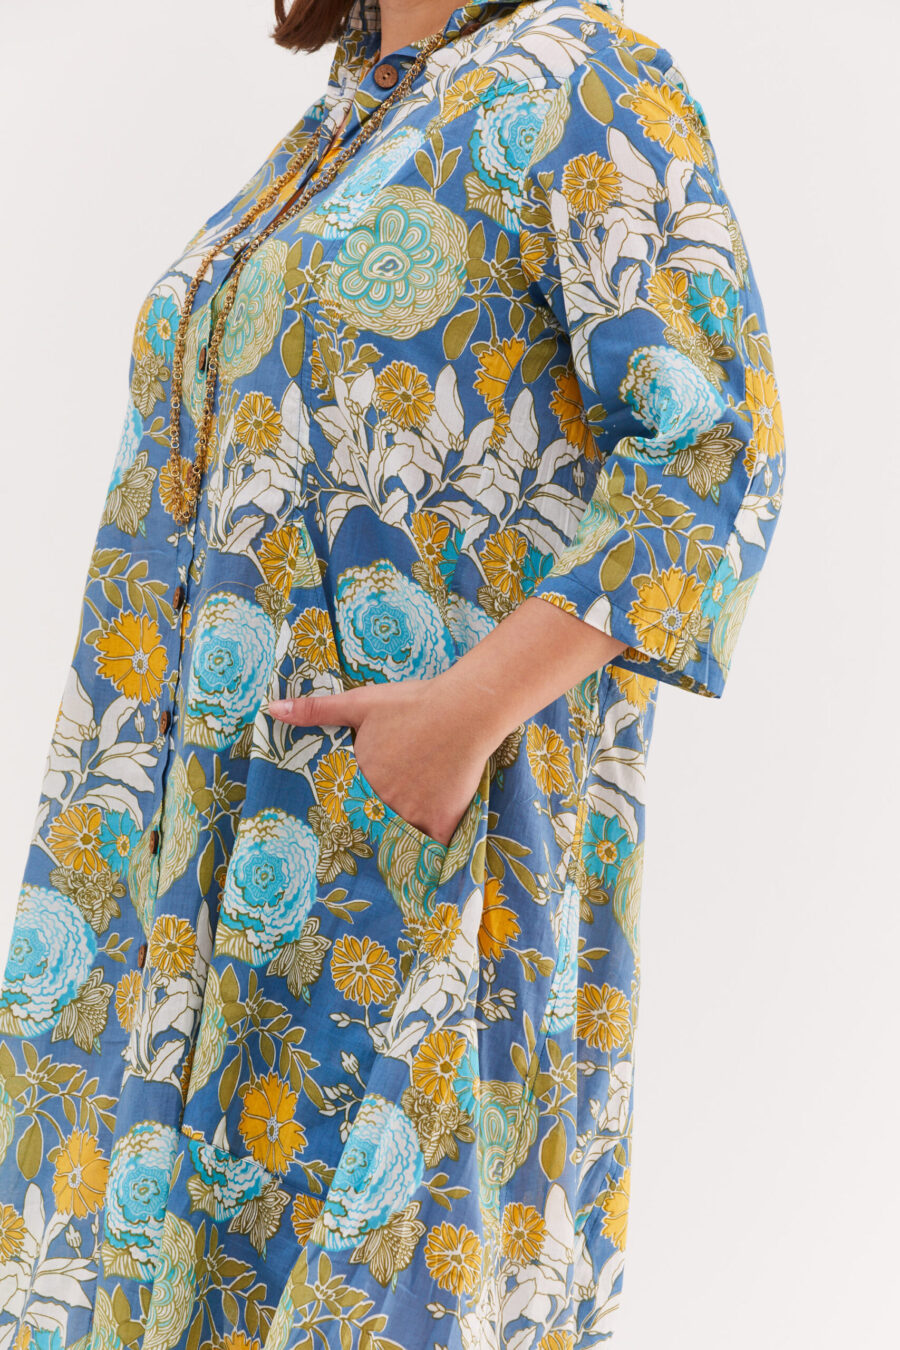 שמלת איה'לה | שמלת אוברסייז בעיצוב ייחודי - הדפס בלוסום כחול, הדפס פרחוני צבעוני על רקע כחול